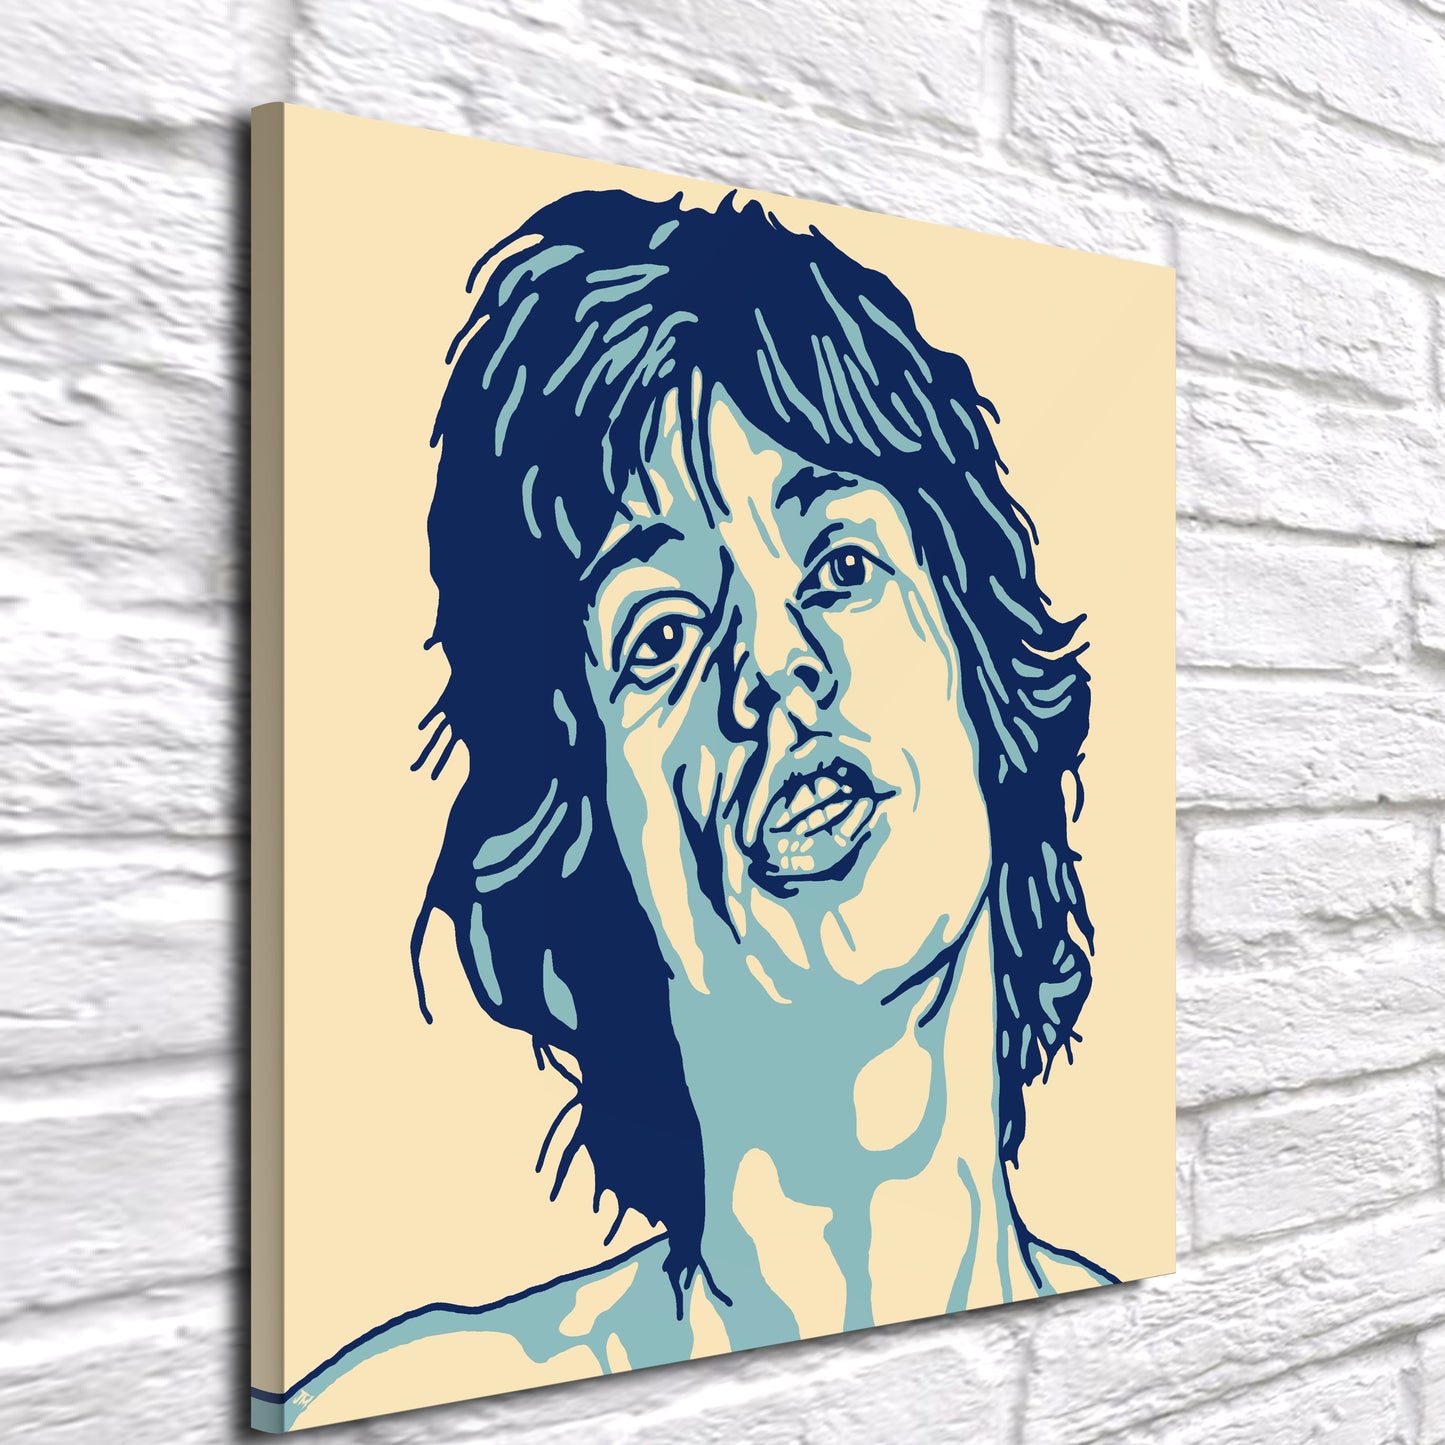 Mick Jagger Retro Pop Art